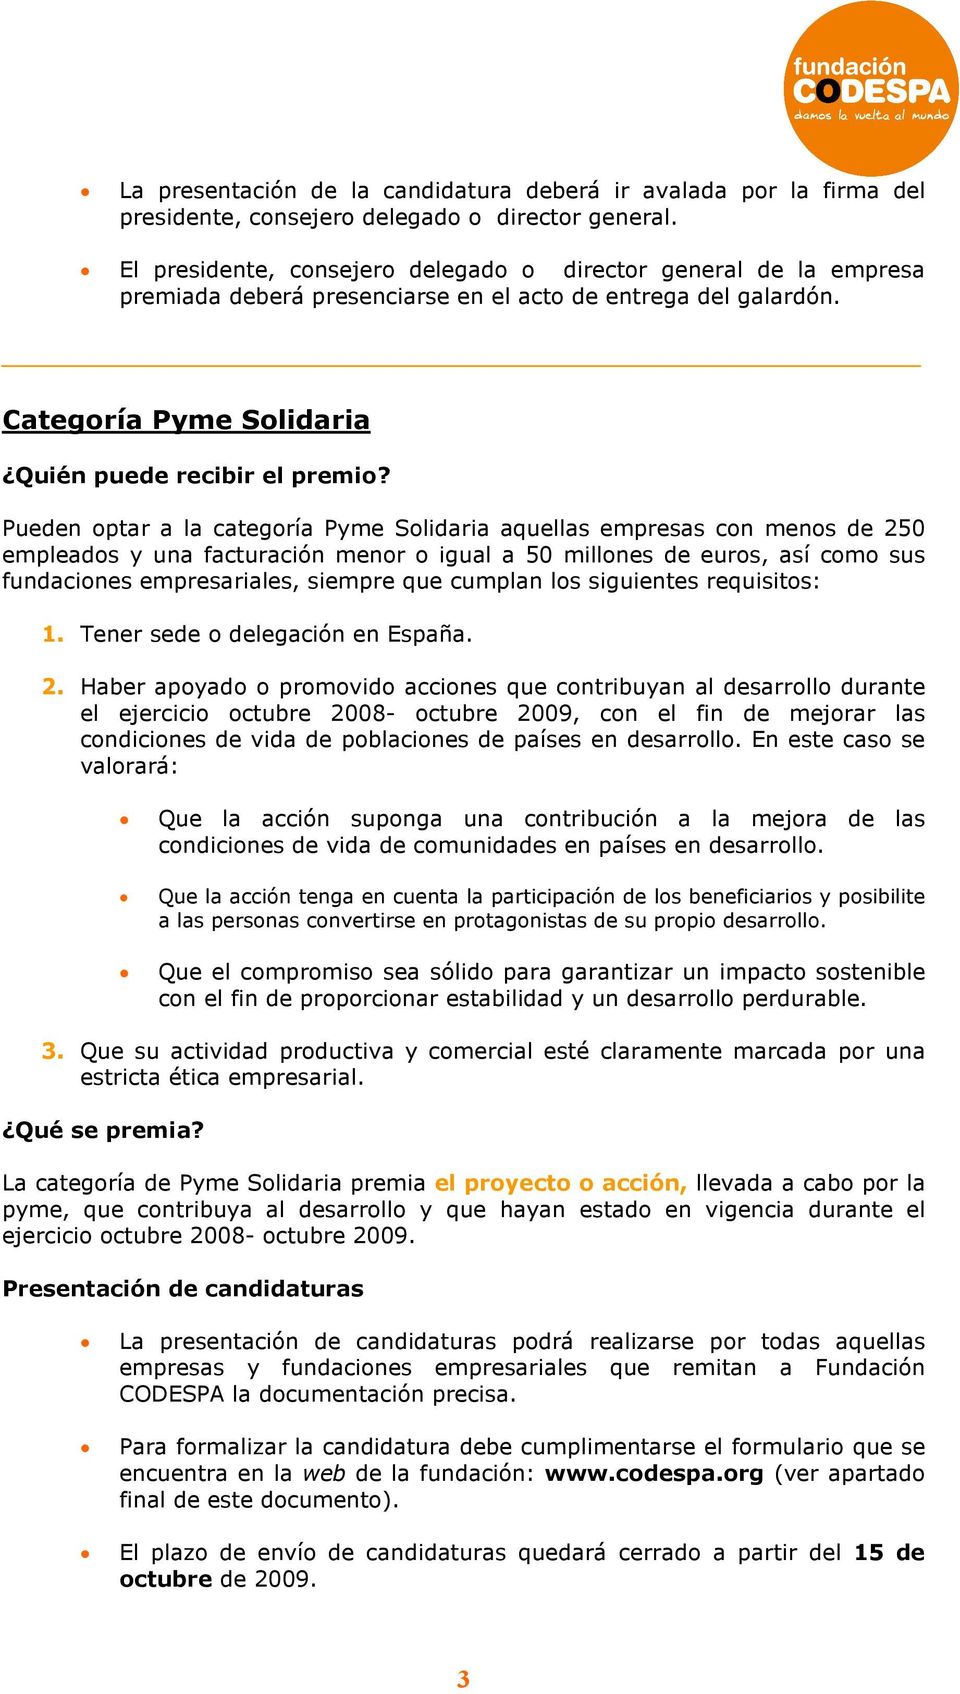 Categoría Pyme Solidaria Pueden optar a la categoría Pyme Solidaria aquellas empresas con menos de 250 empleados y una facturación menor o igual a 50 millones de euros, así como sus fundaciones